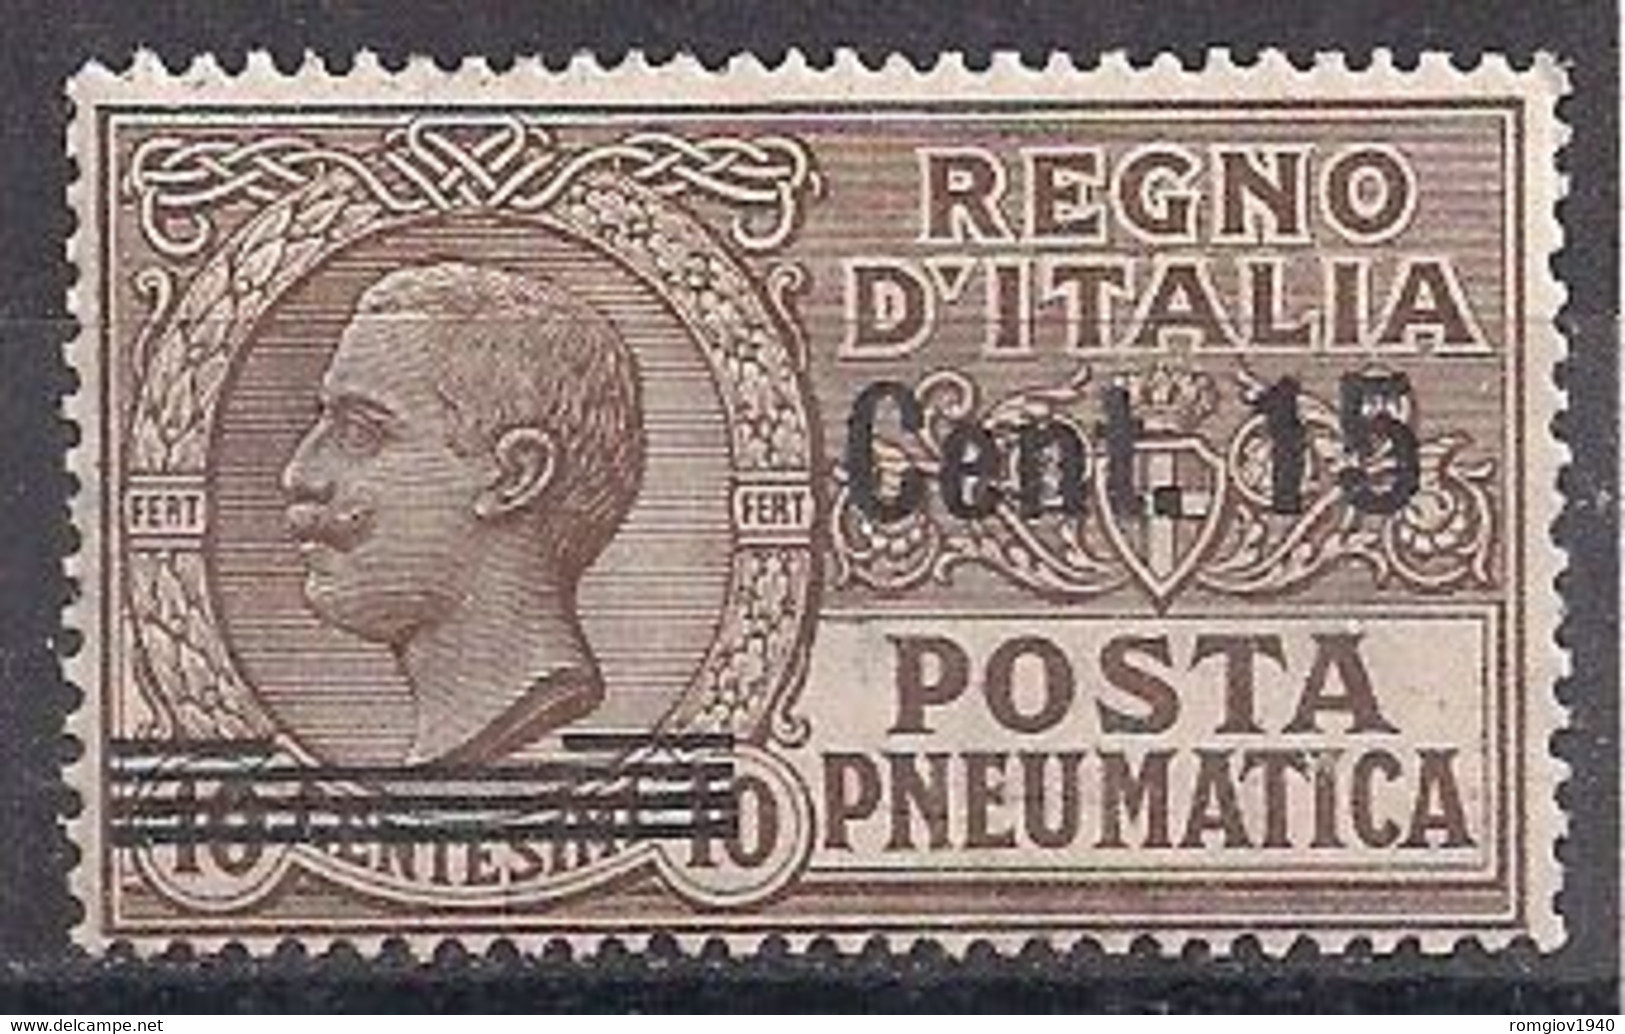 REGNO D'ITALIA POSTA PNEUMATICA 1913-1923 EFFIGE DI V.EMANUELE III SASS. 4 MLH VF - Poste Pneumatique